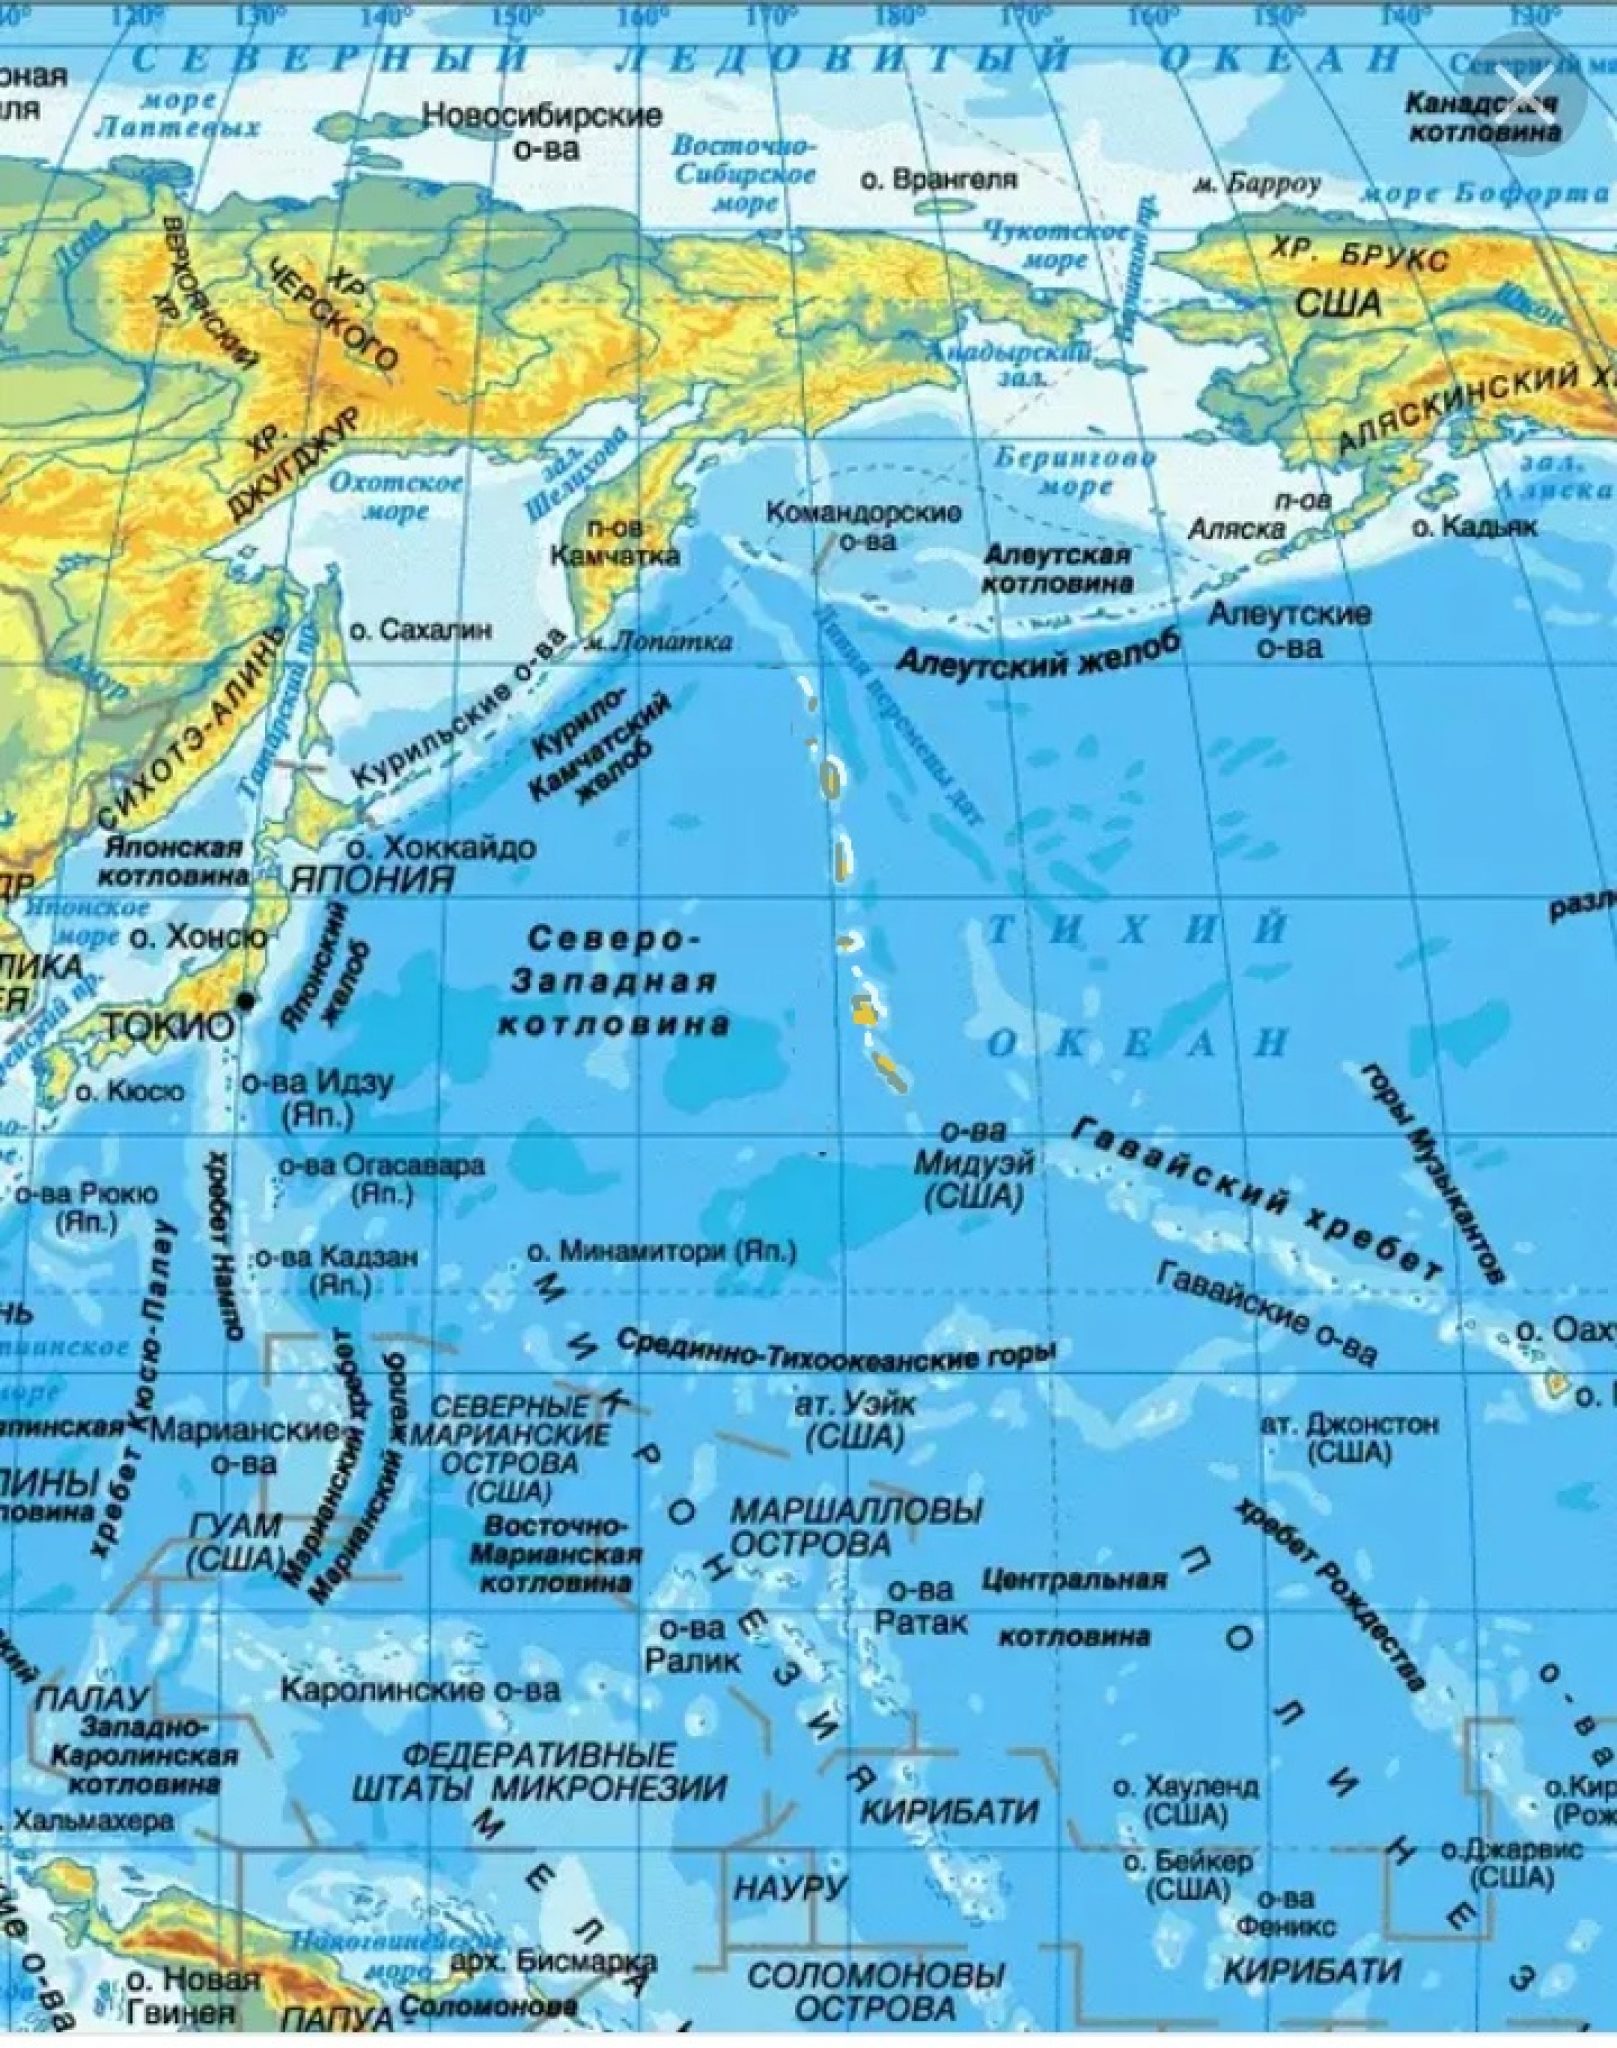 Омывающего остров тихого океана. Северная часть Тихого океана на карте. Моря заливы проливы острова полуострова на карте. Тихий океан на физической карте России.